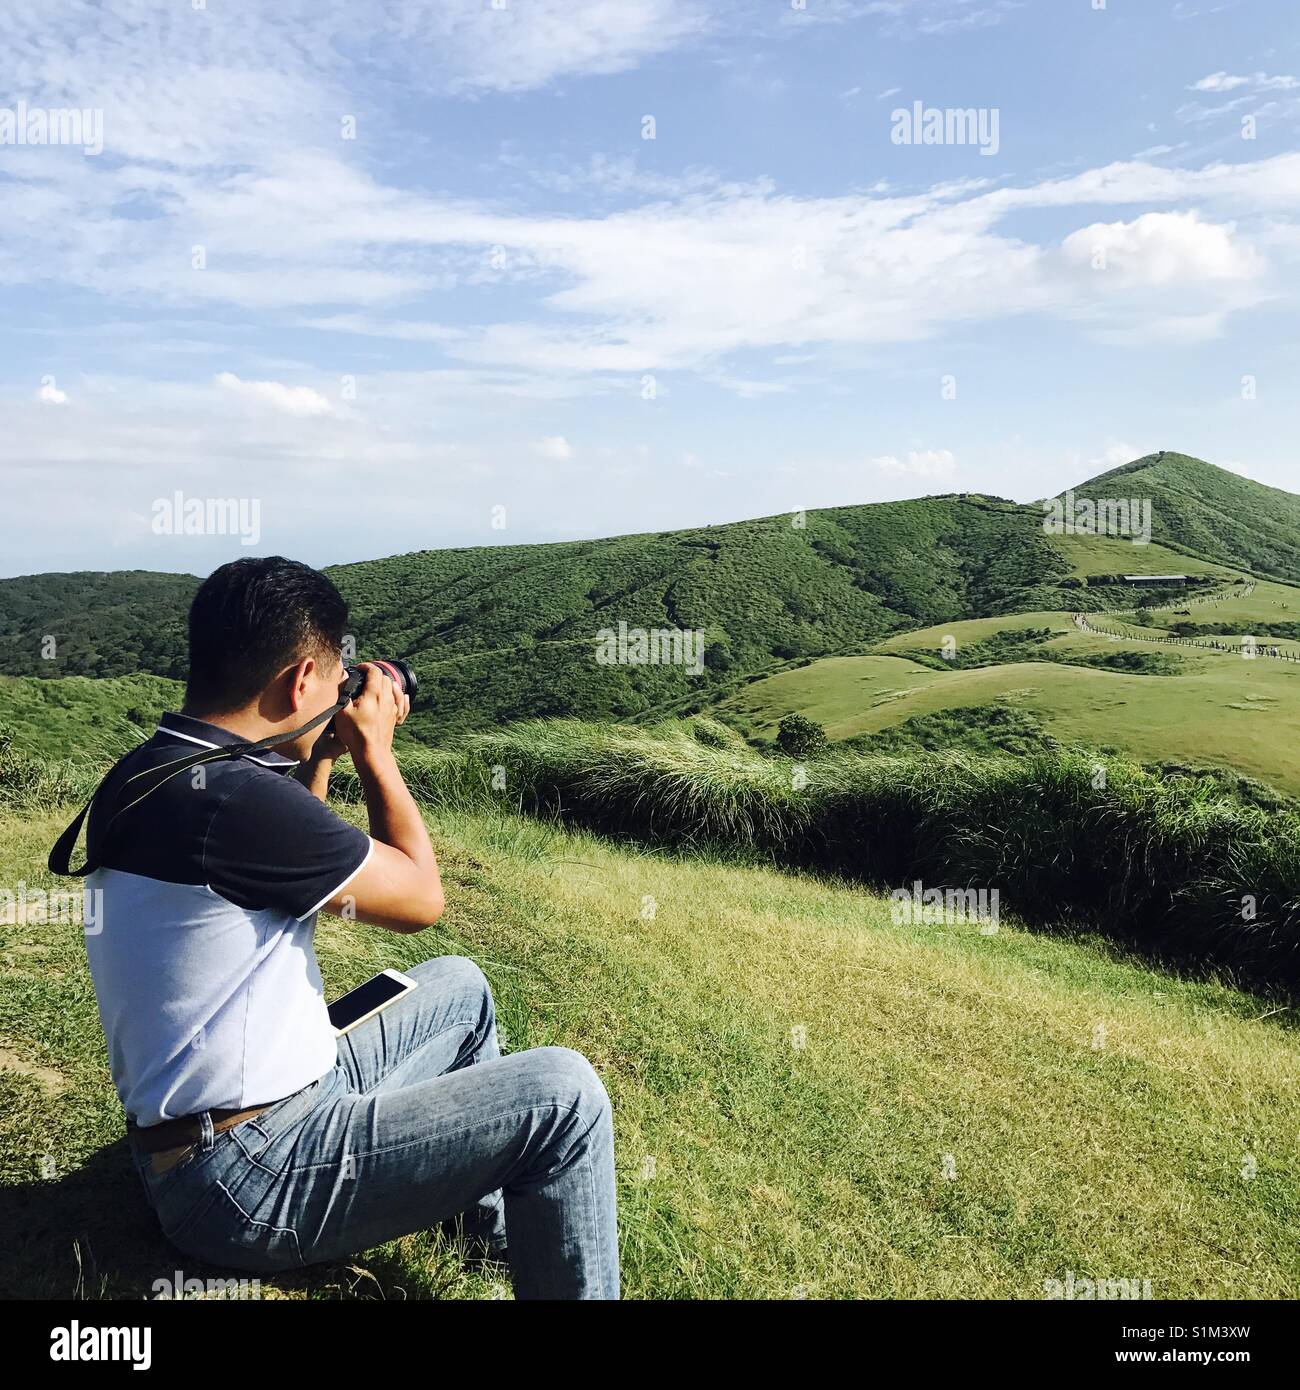 Un amante de la fotografía toma una foto de la hierba hills Foto de stock